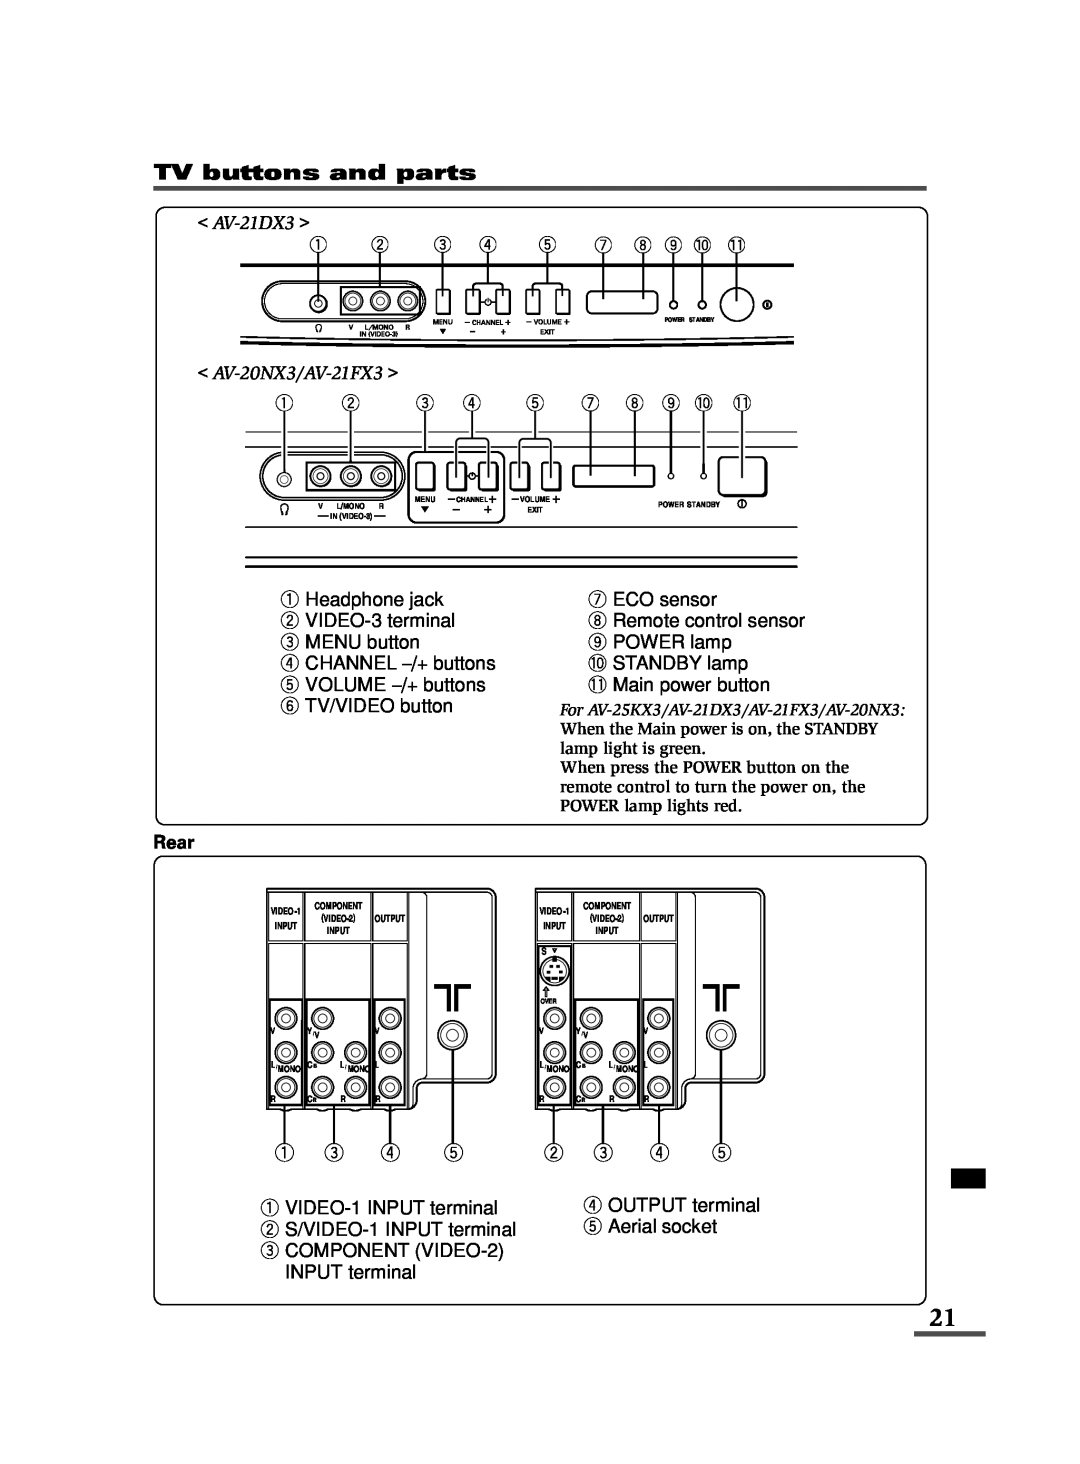 JVC specifications TV buttons and parts, AV-21DX3, AV-20NX3/AV-21FX3, Rear 